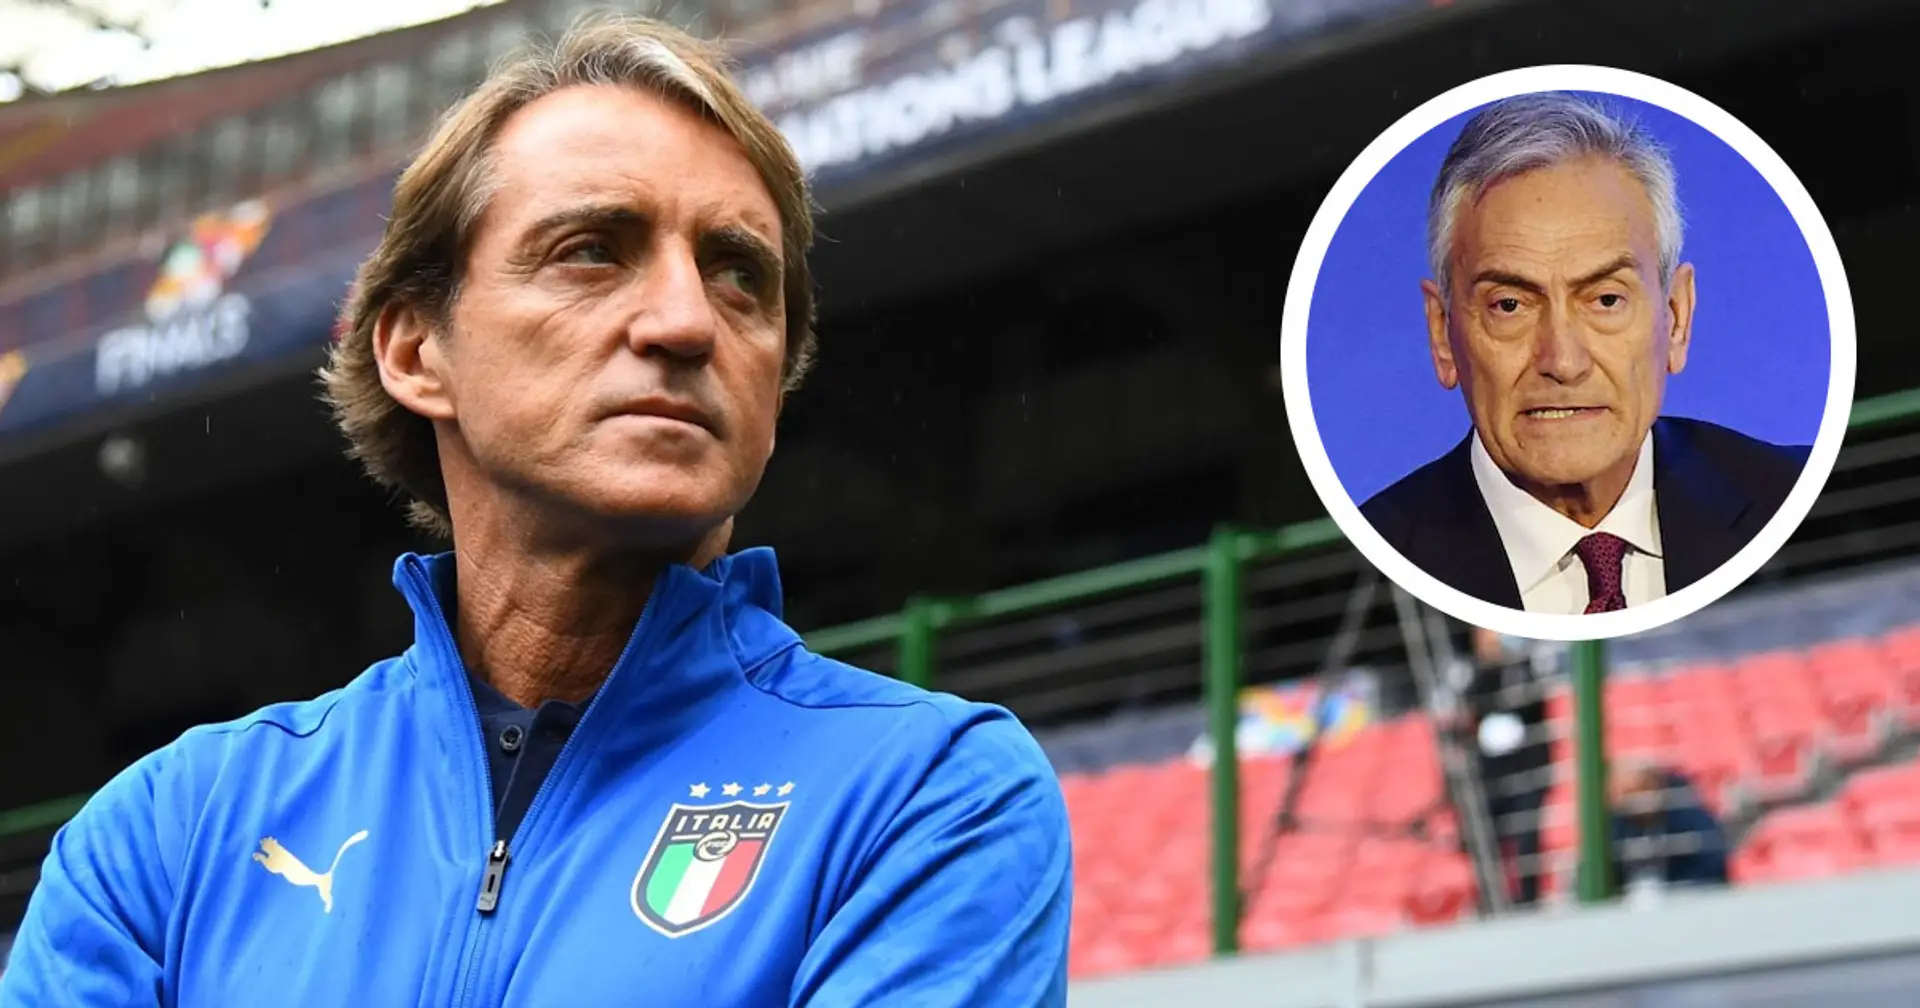 "Les motivations de Mancini sont faibles et superficielles", Gravina révèle le contexte des adieux de l'ancien sélectionneur italien